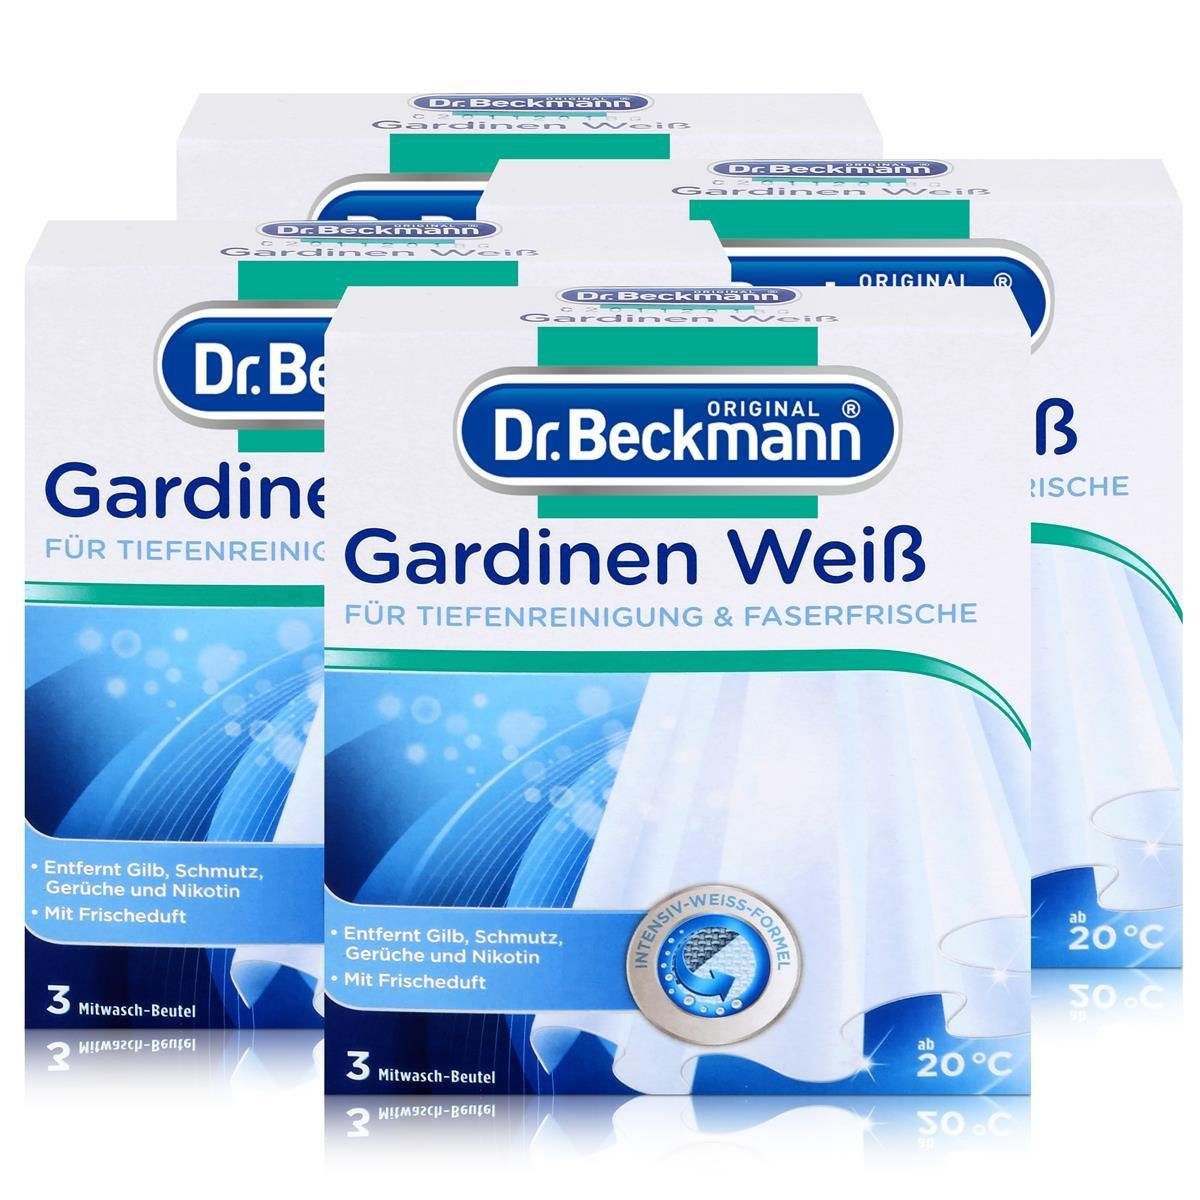 Dr. Beckmann 4x Dr. Beckmann Gardinen Weiß 120g - Intensives Weiß & Faserfrische Spezialwaschmittel